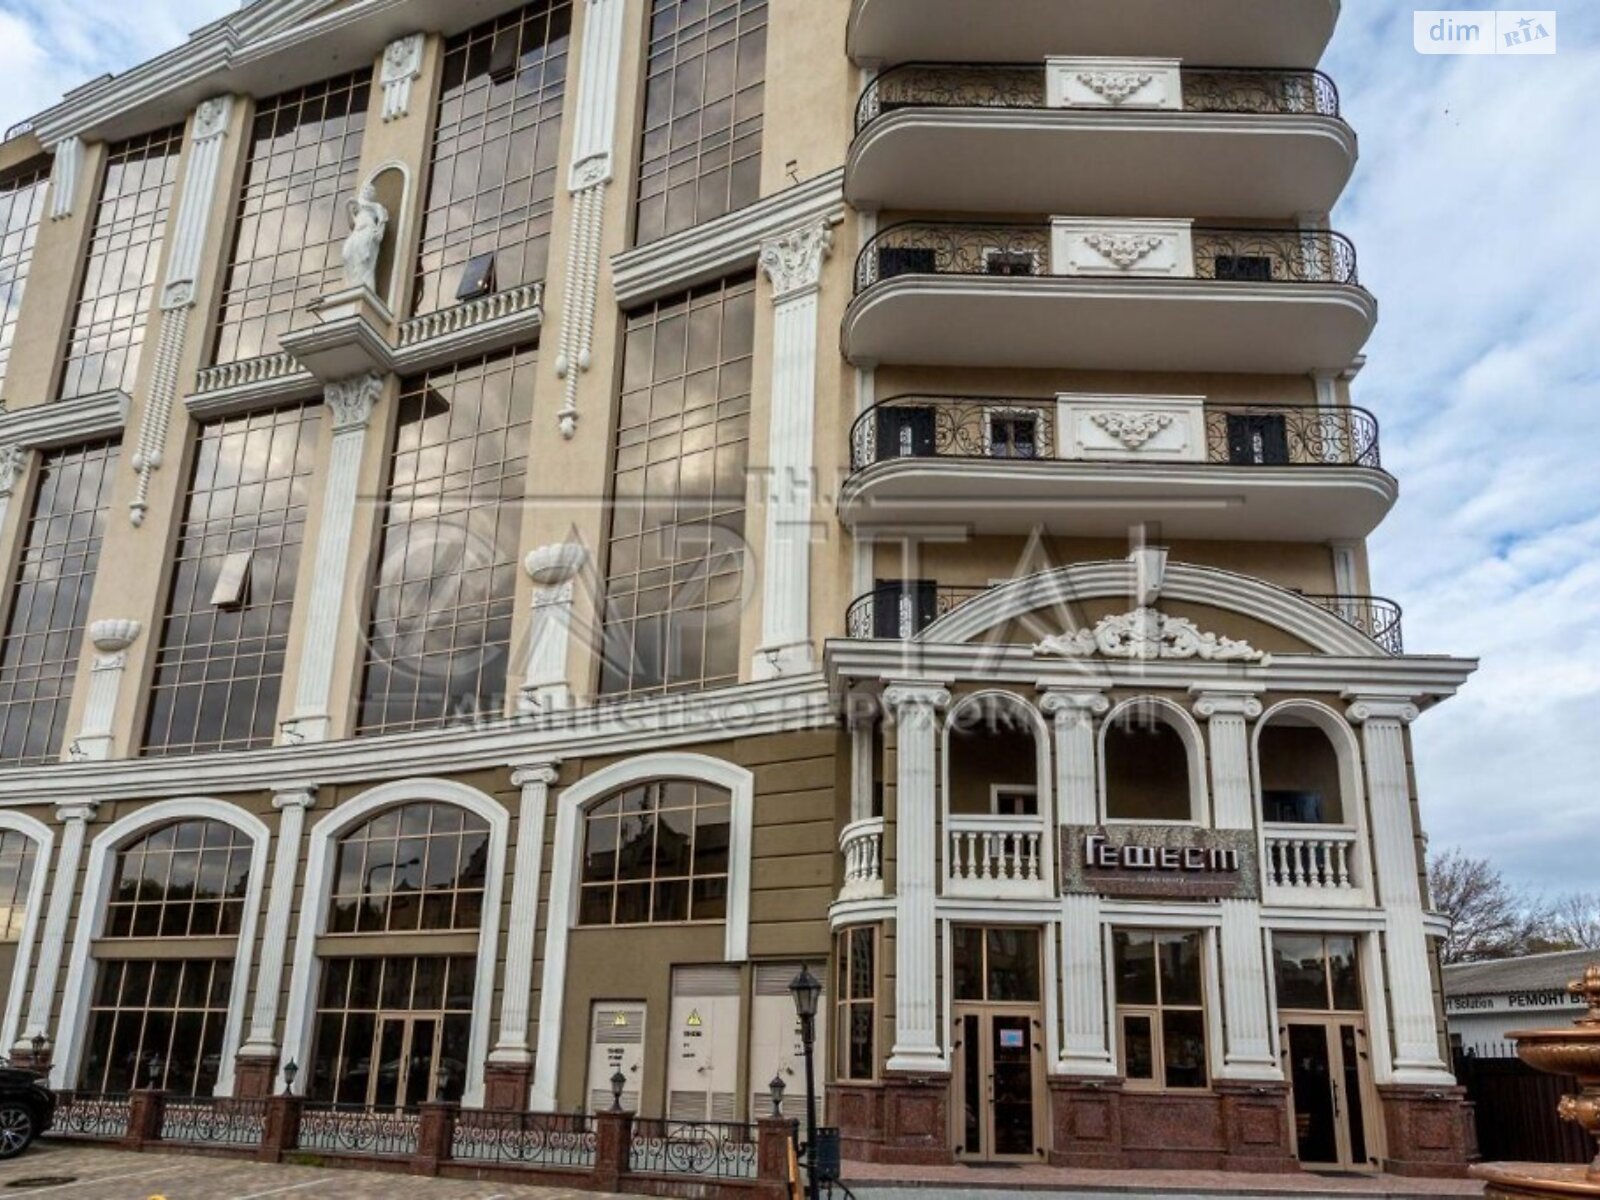 Аренда офисного помещения в Киеве, Глубочицкая улица 99А, помещений - 1, этаж - 3 фото 1